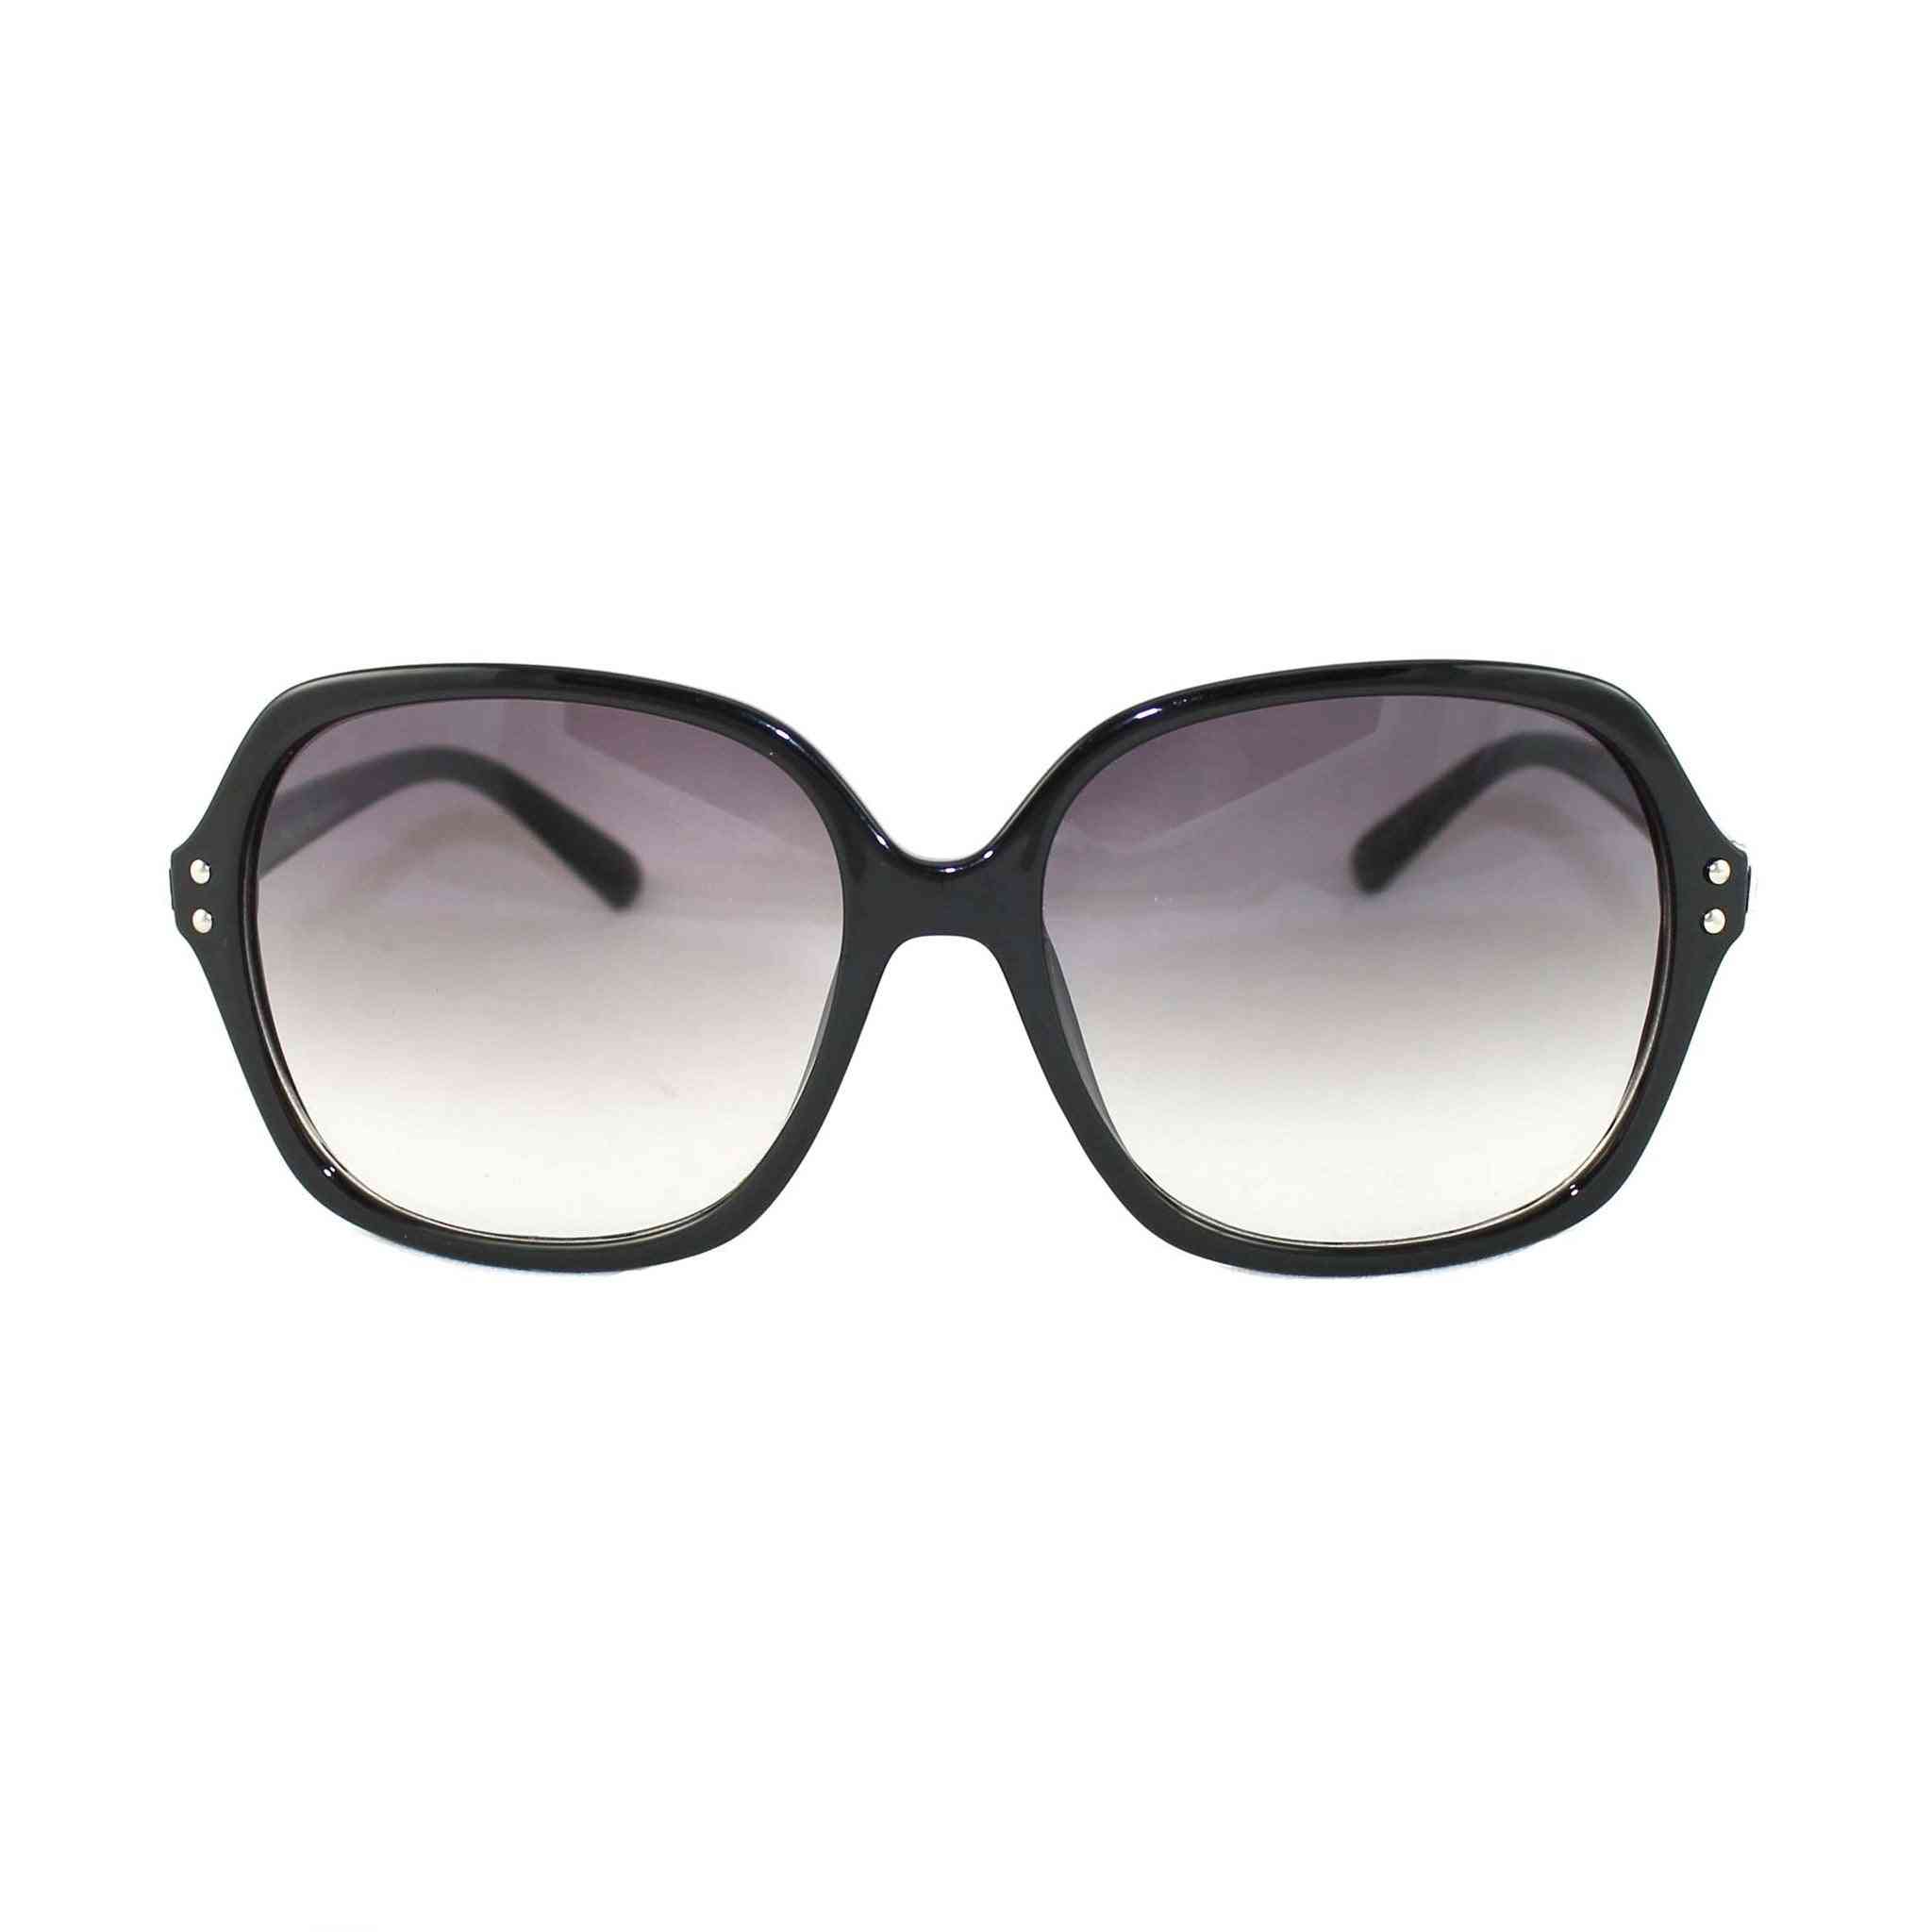 Sonnenbrille im Vintage-Stil mit großem Rahmen